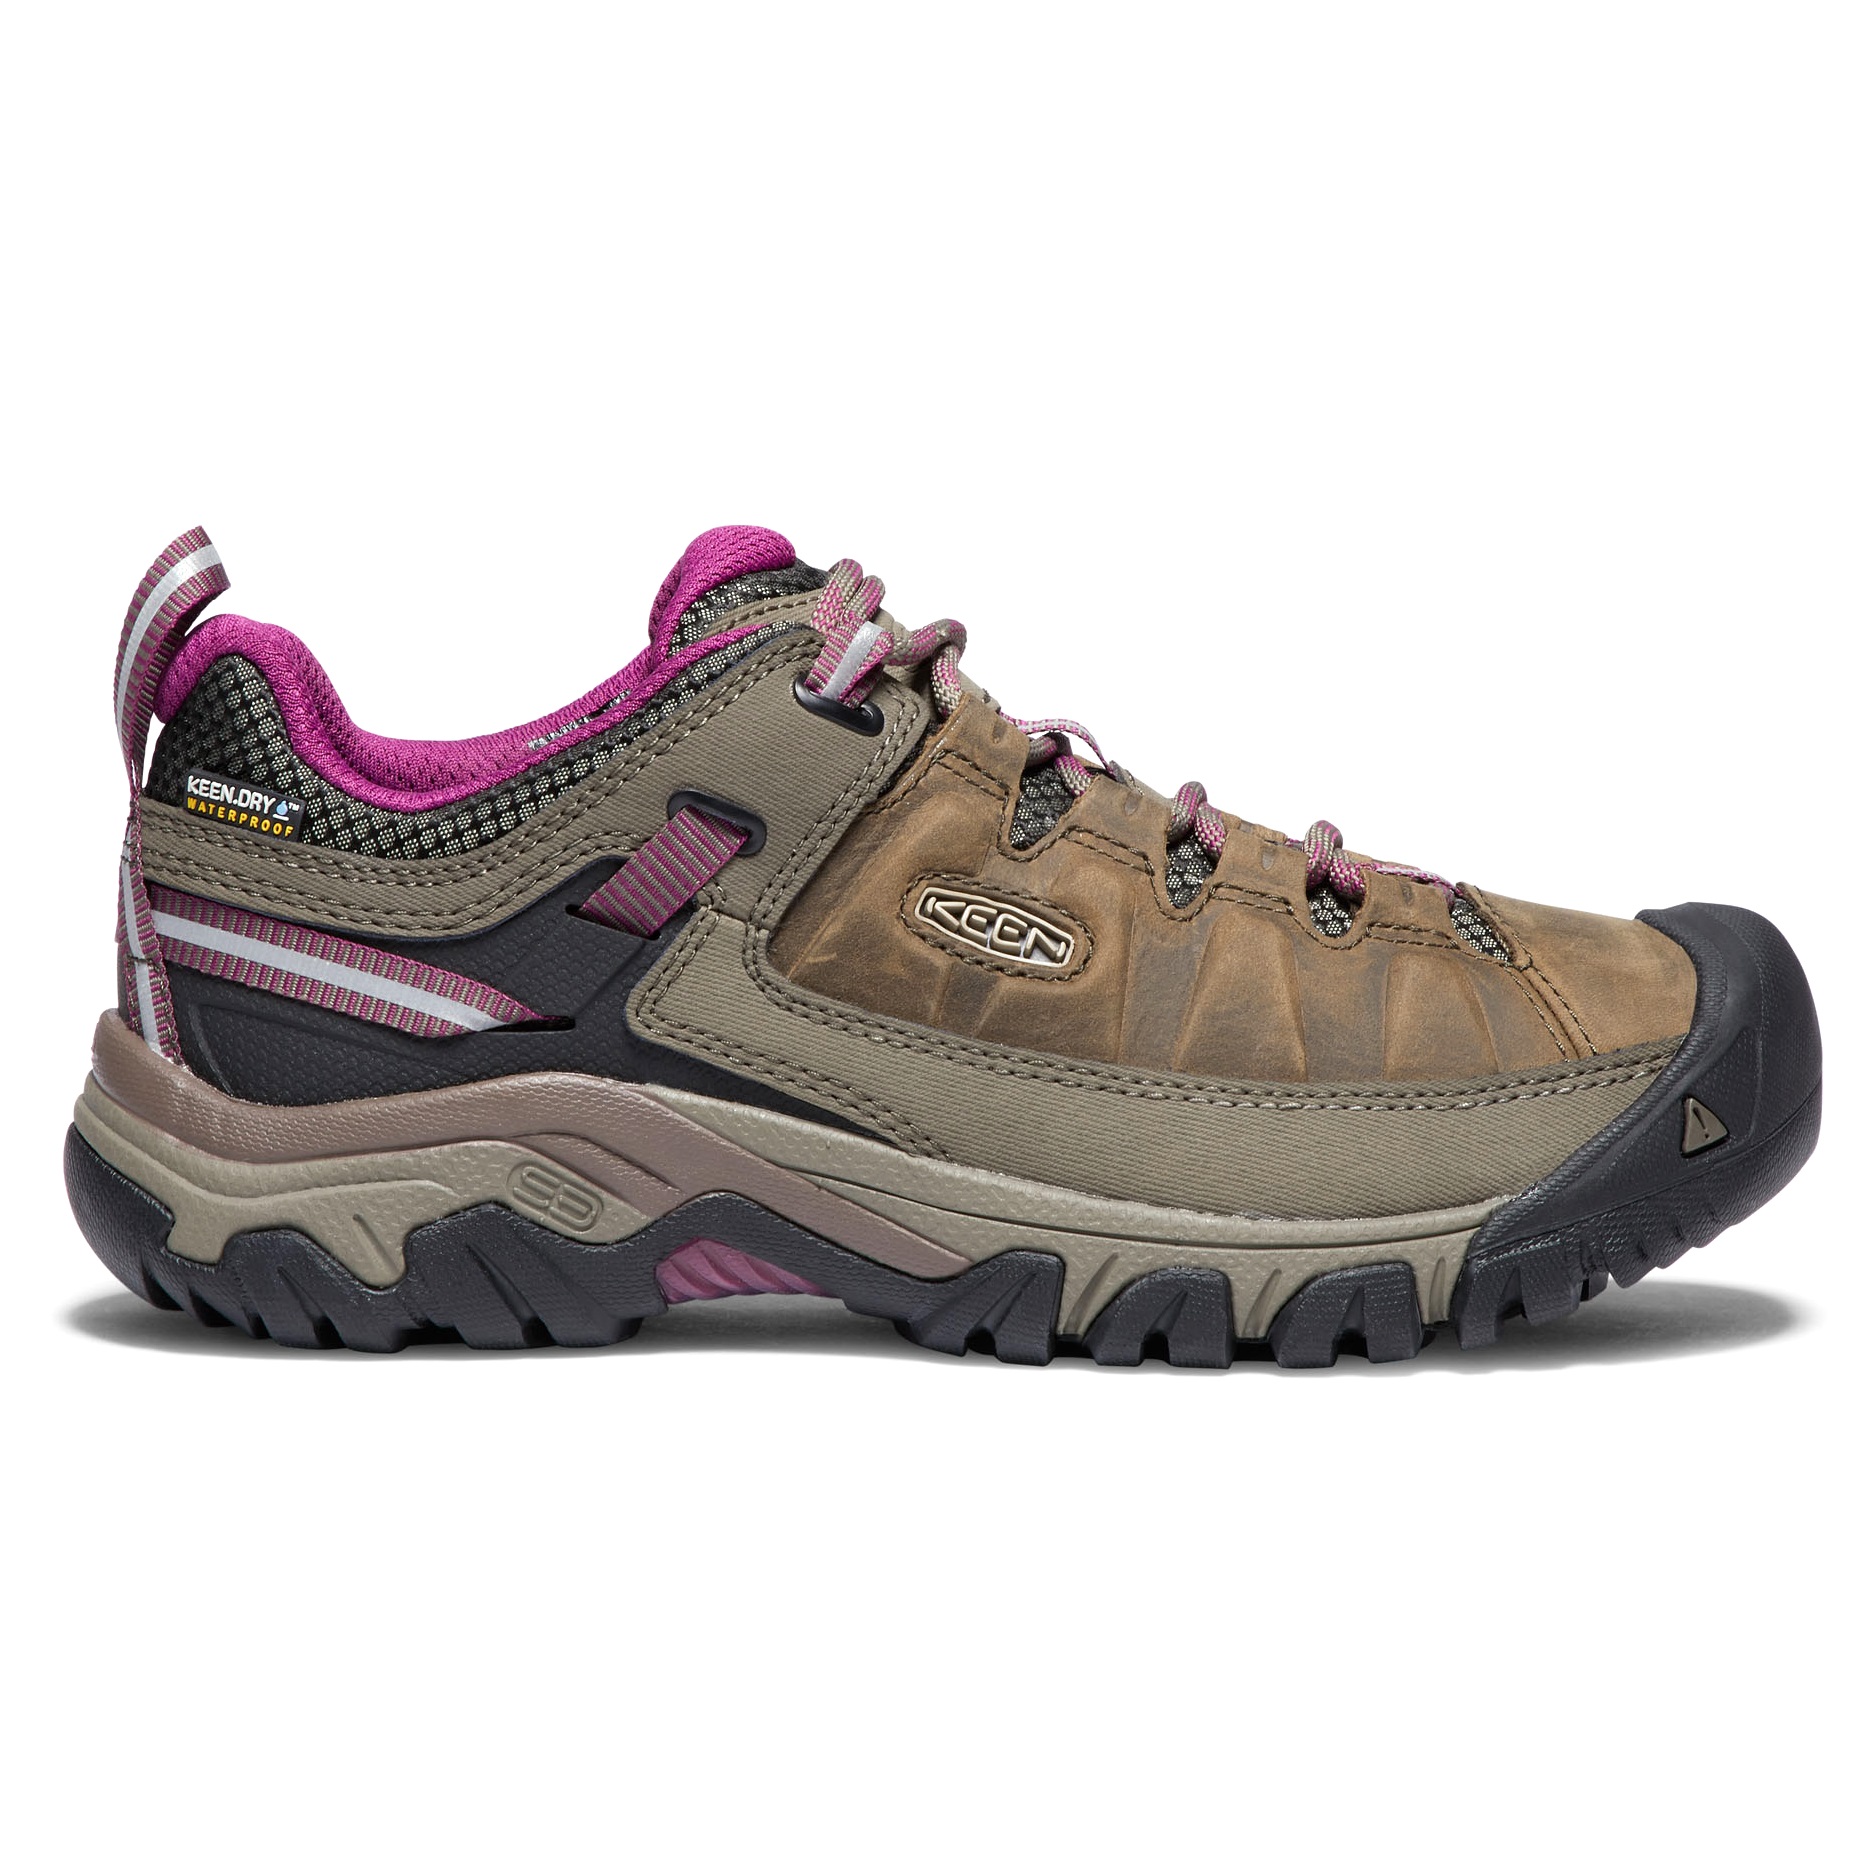 Keen Women's Targhee III Waterproof Hiking Shoes Weiss/Boysenberry 38, Weiss/Boysenberry